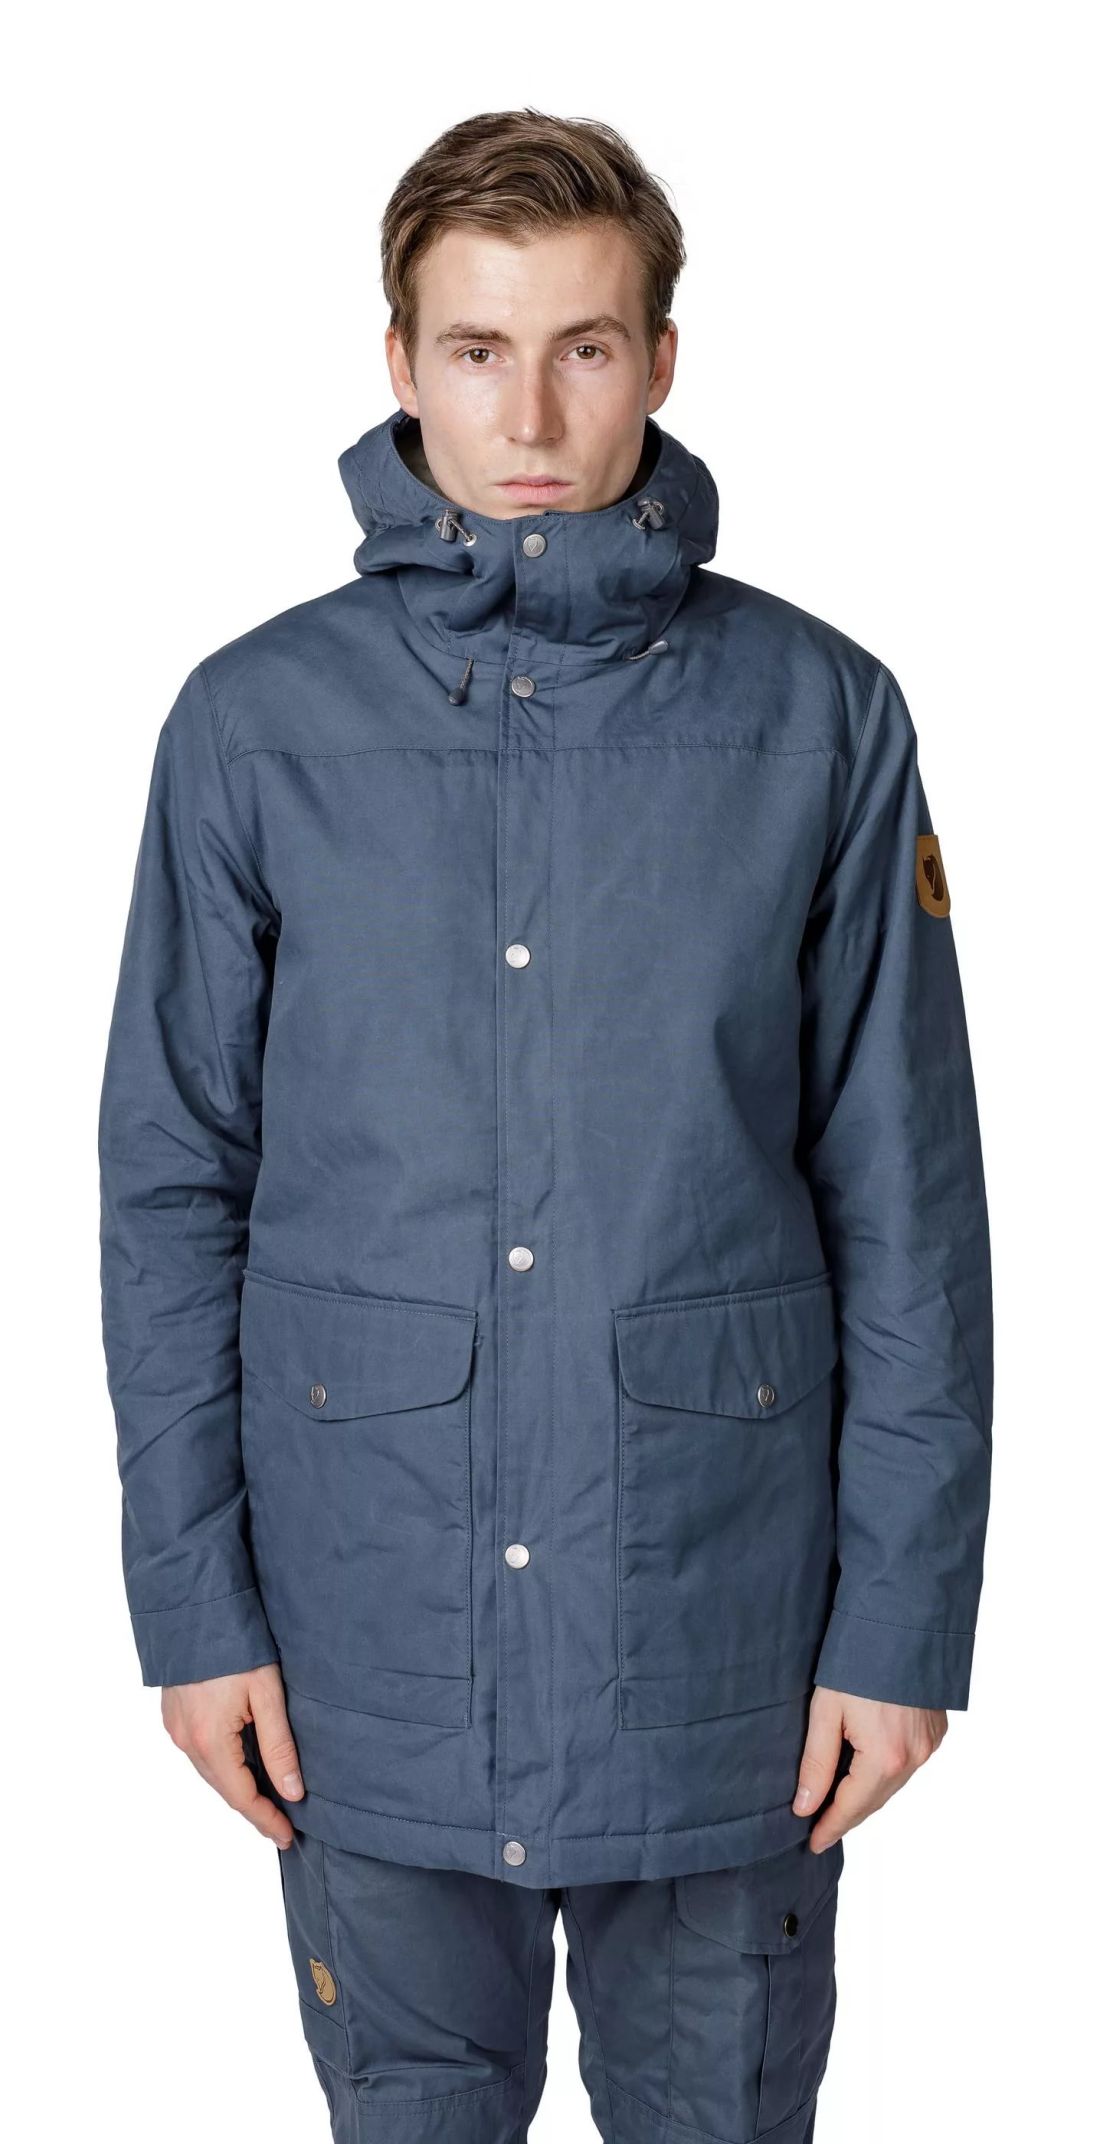 Fjallraven - Куртка с флисовой подкладкой Greenland Winter Parka